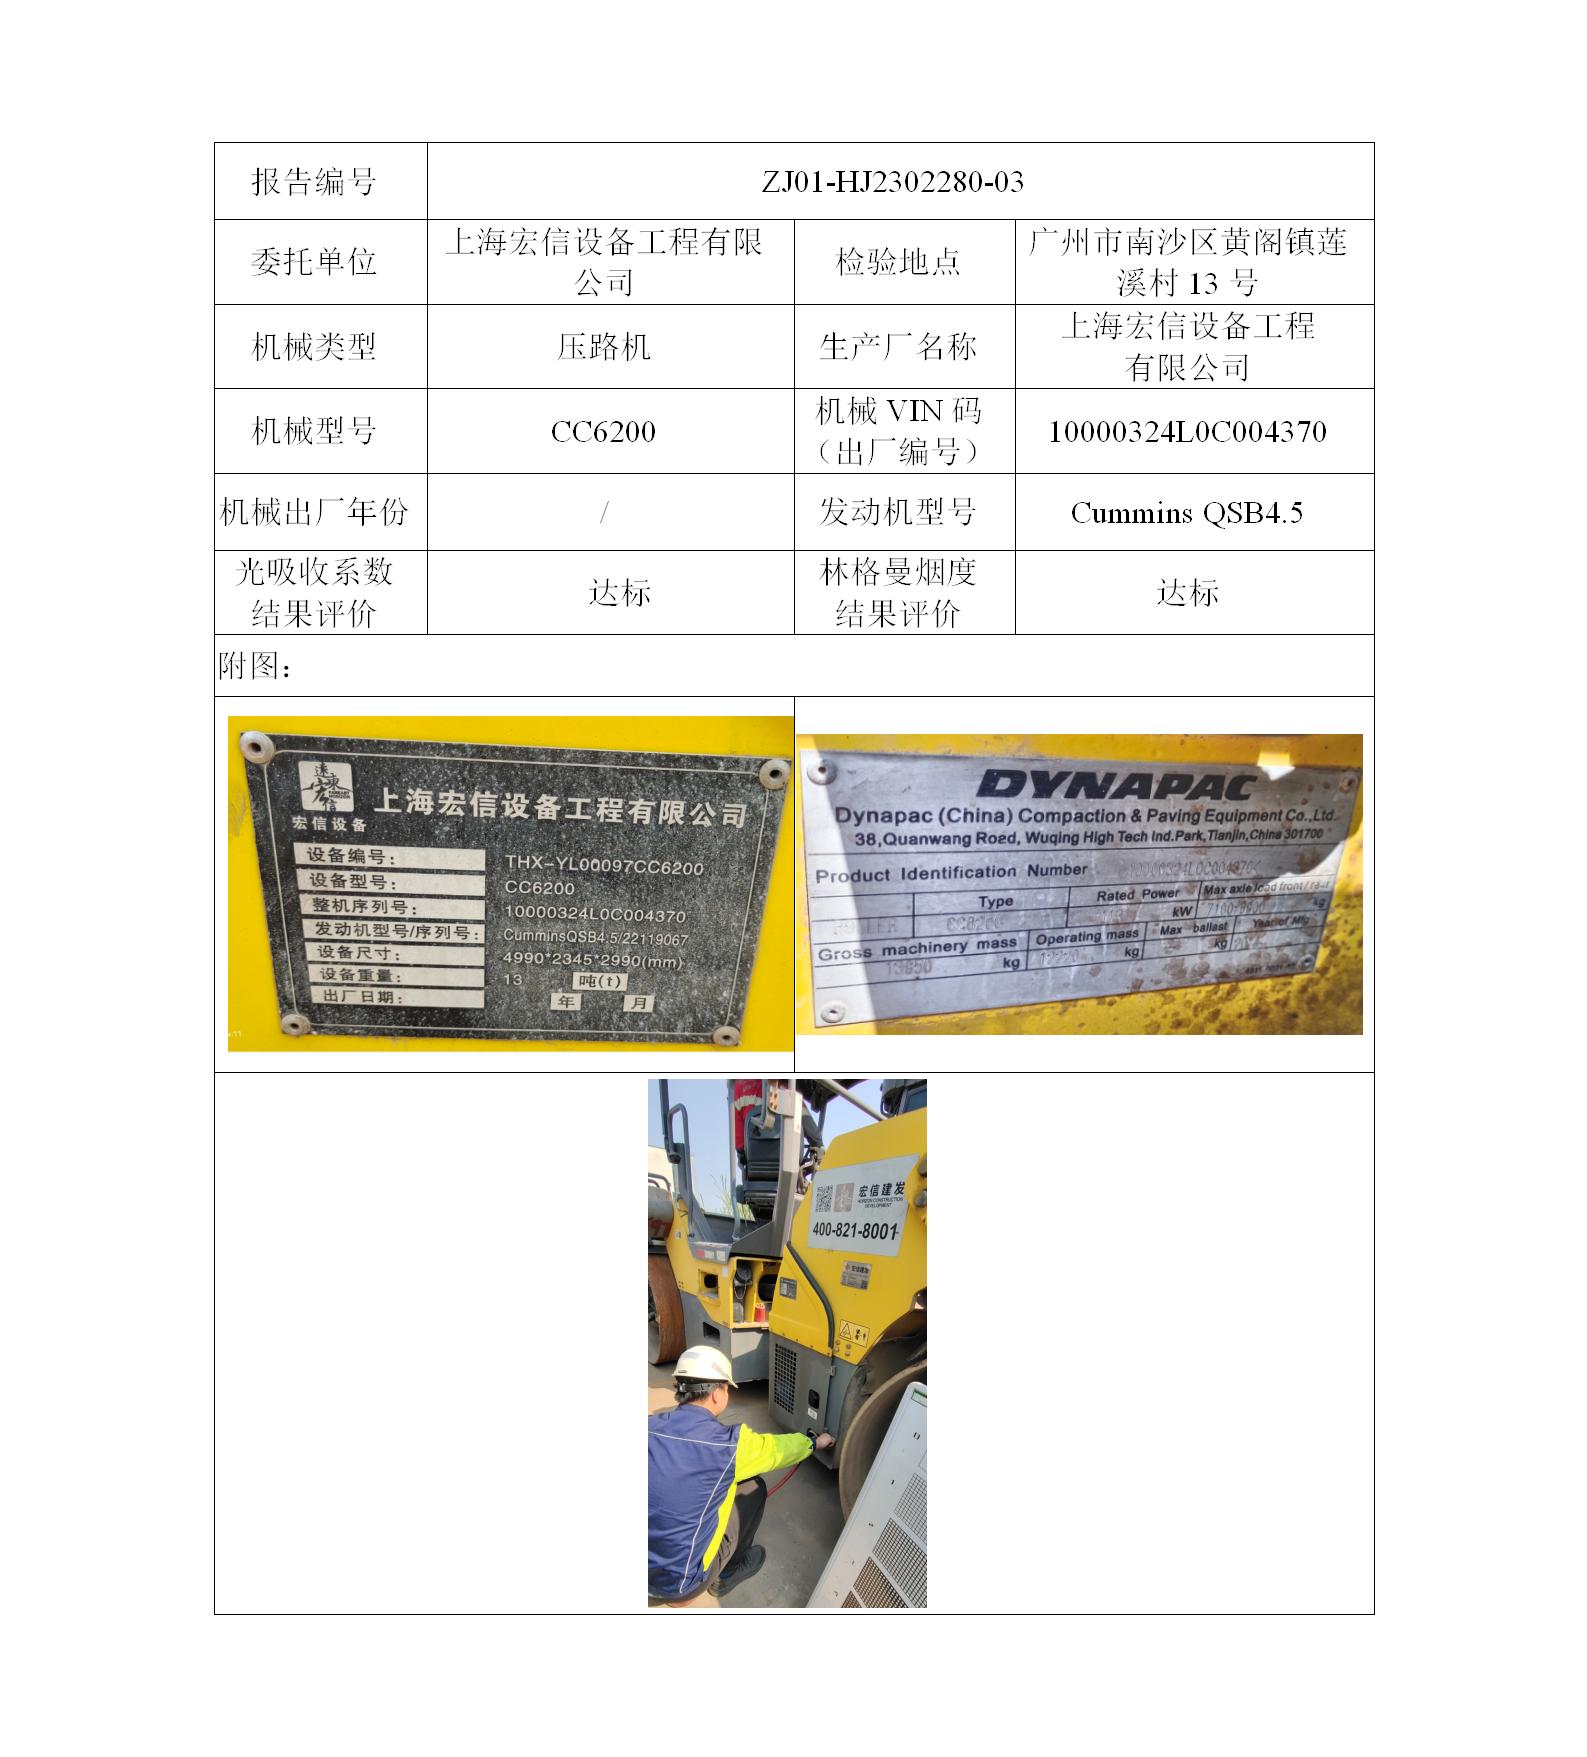 委托-ZJ01-HJ2302280-03上海宏信设备工程有限公司（叉车废气）二维码-陈咏娟_01.jpg